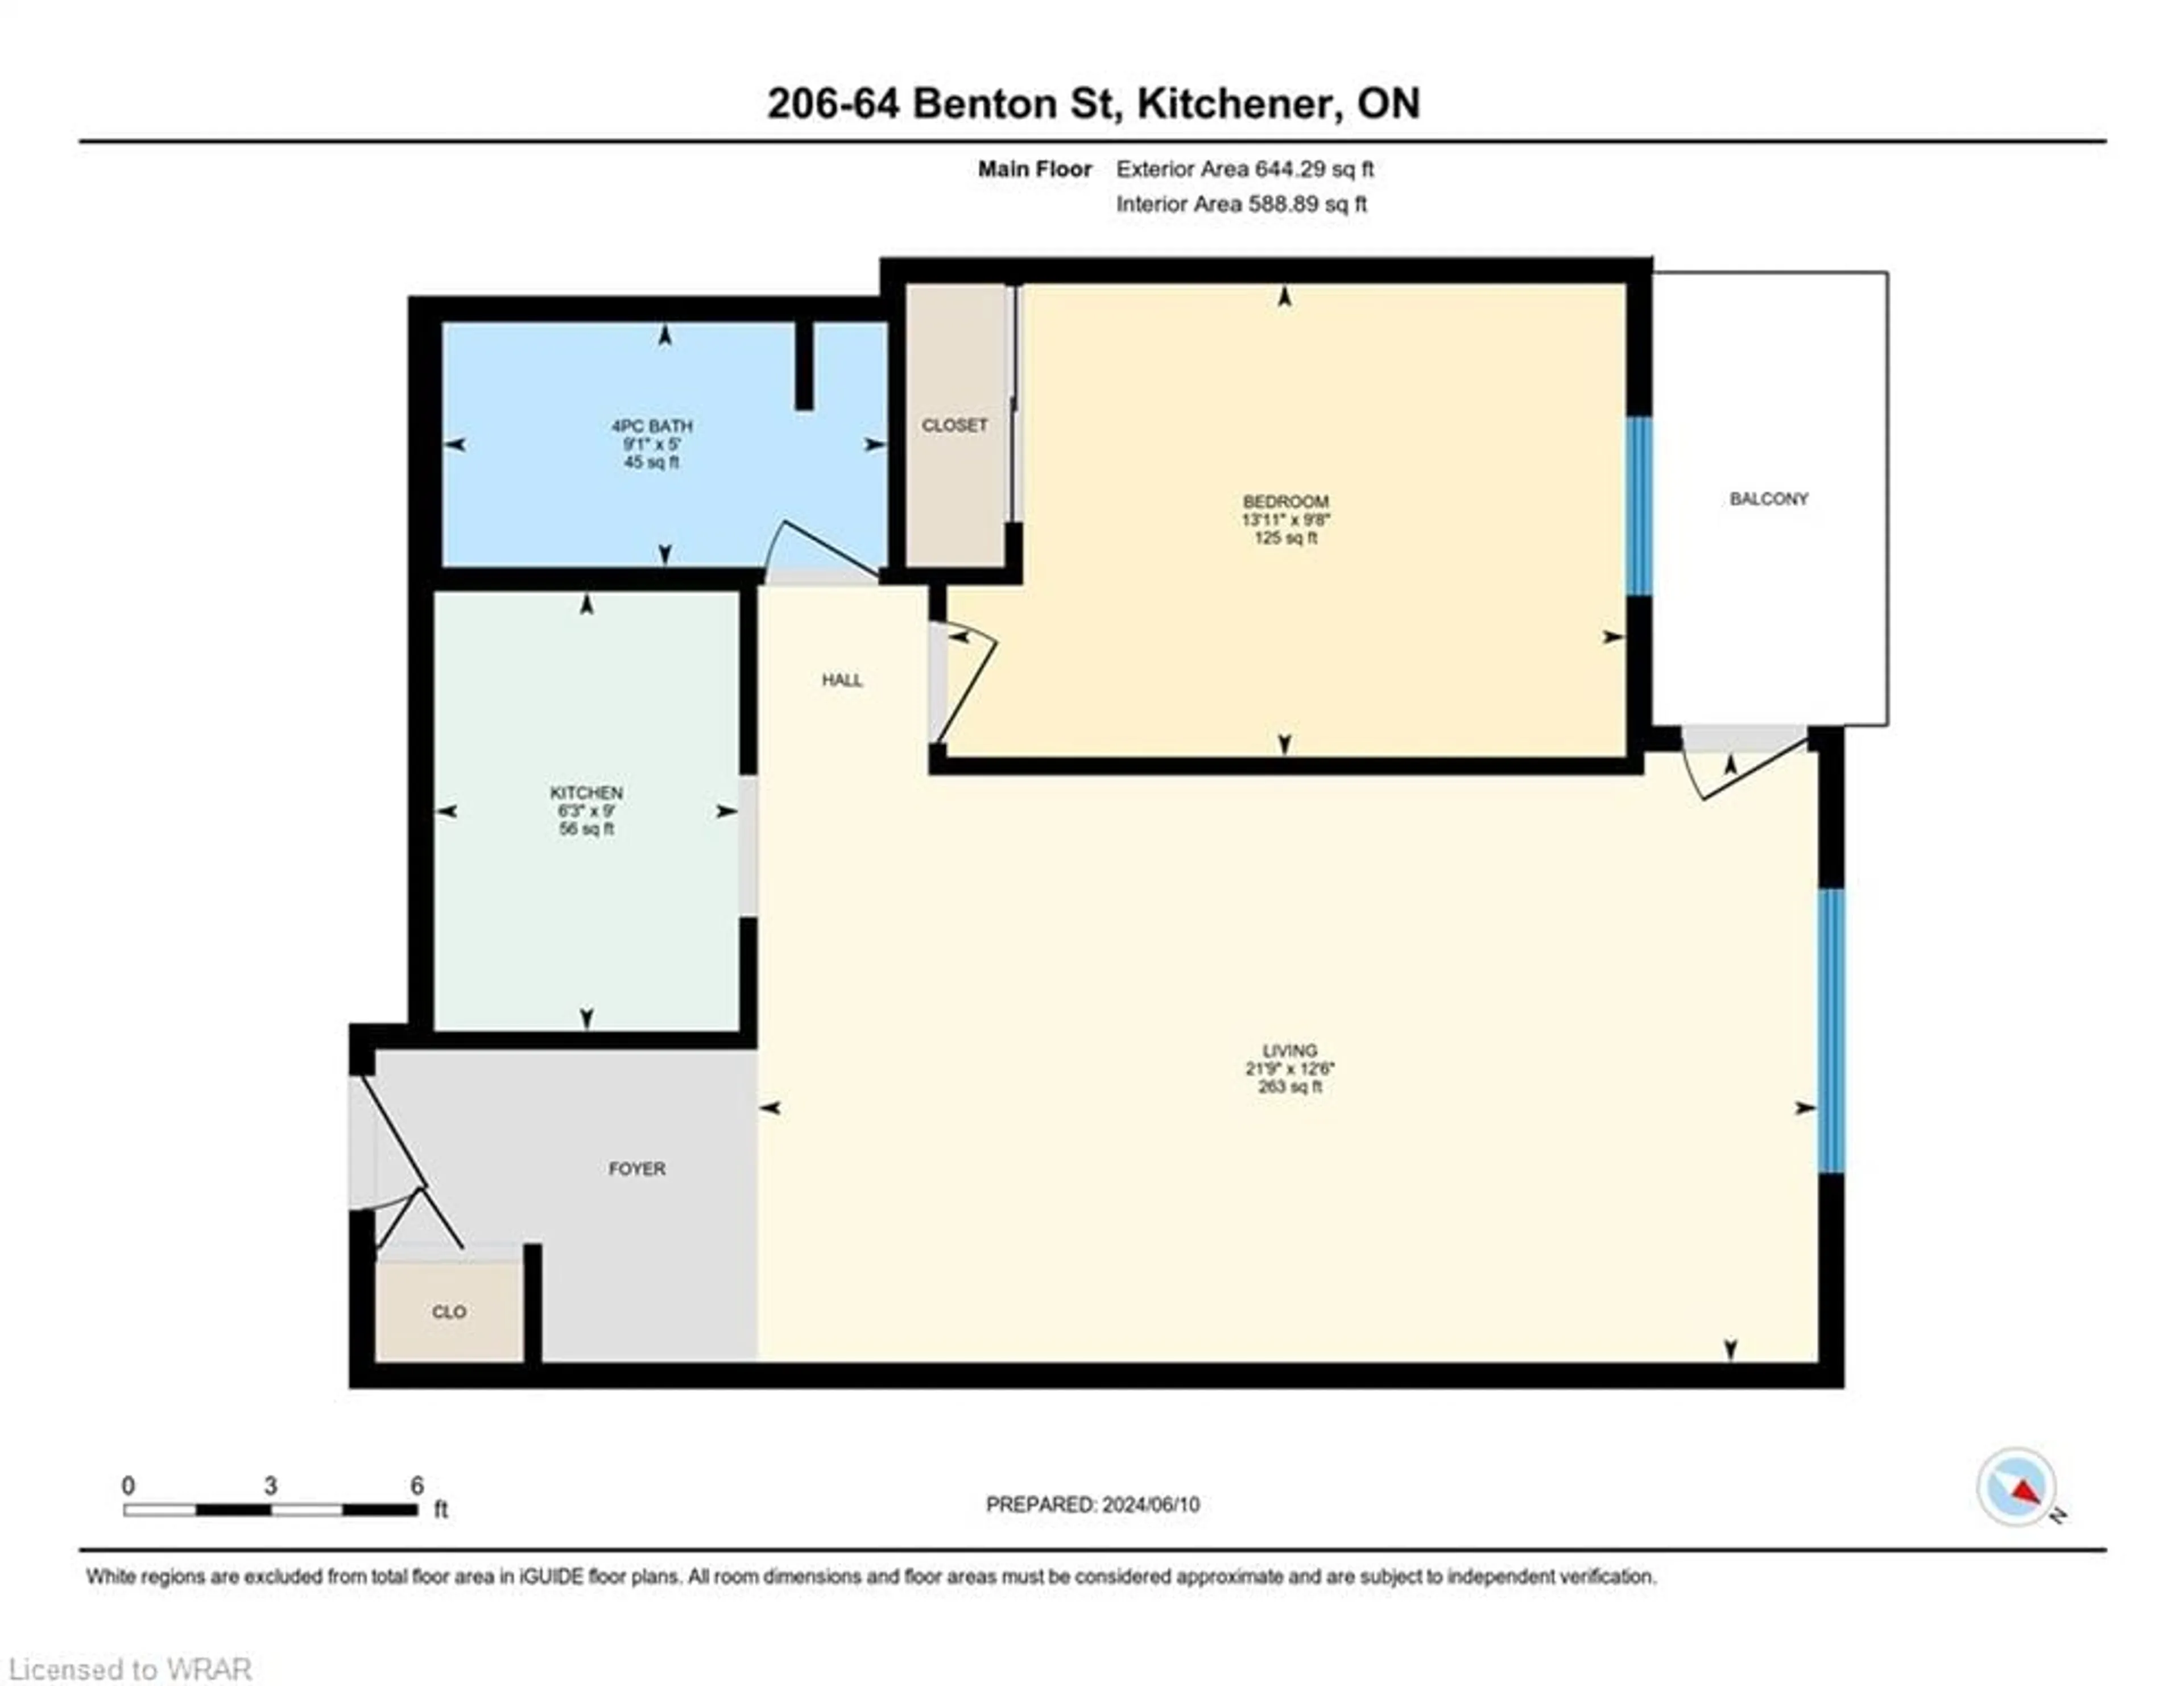 Floor plan for 64 Benton St #206, Kitchener Ontario N2G 4L9